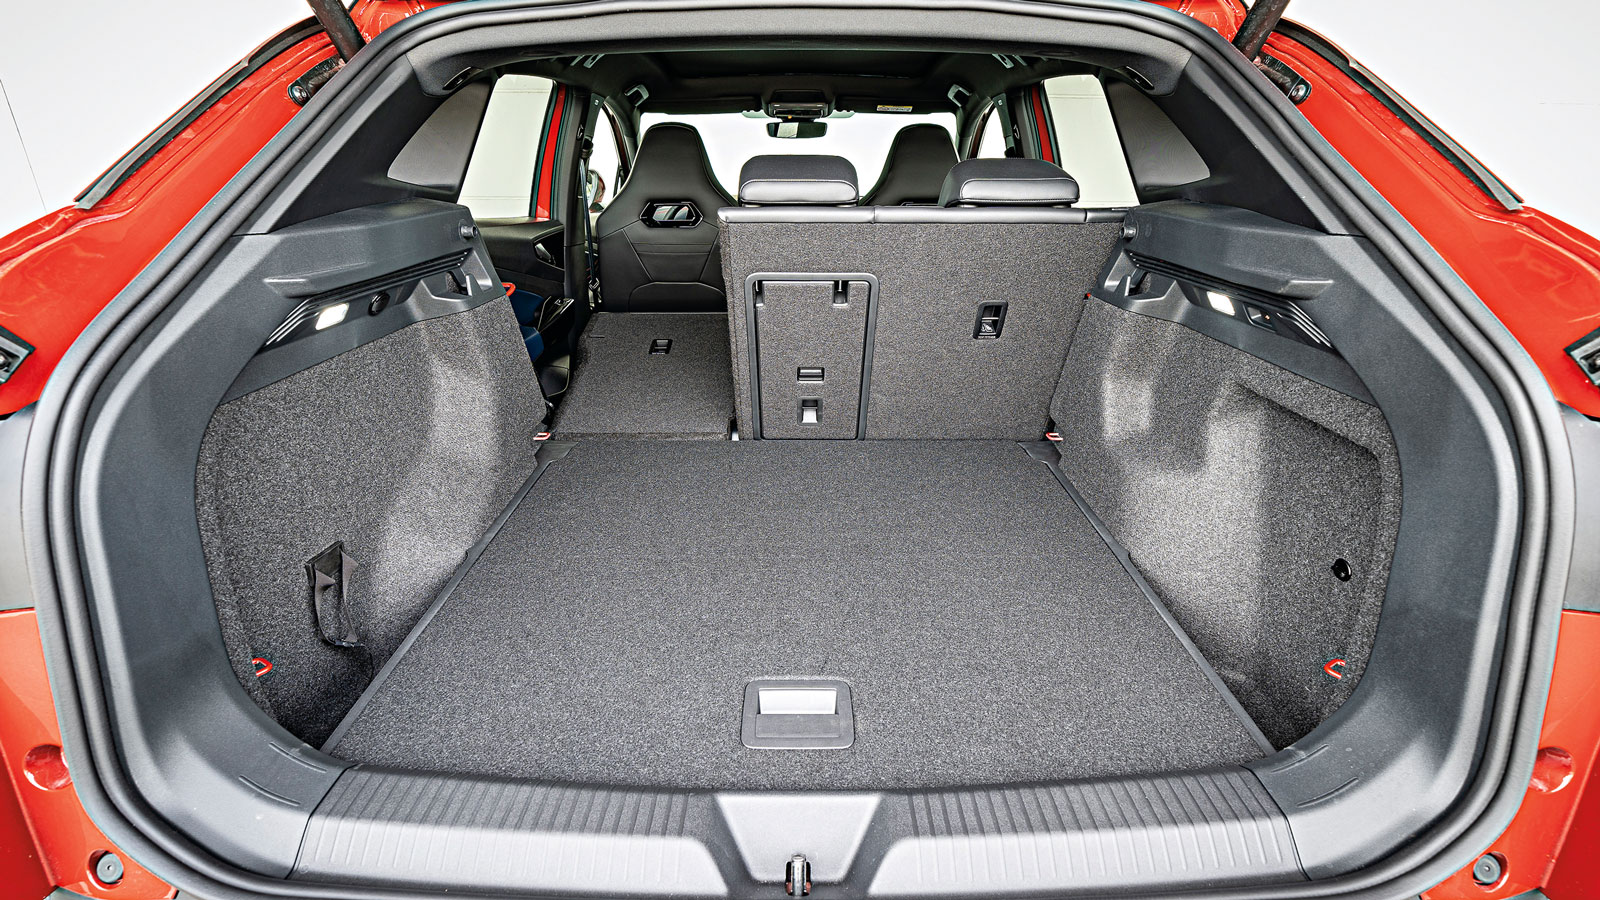 Το VW έχει περισσότερο ωφέλιμο φορτίο και μεγαλύτερο πλάτος πορτ-μπαγκάζ